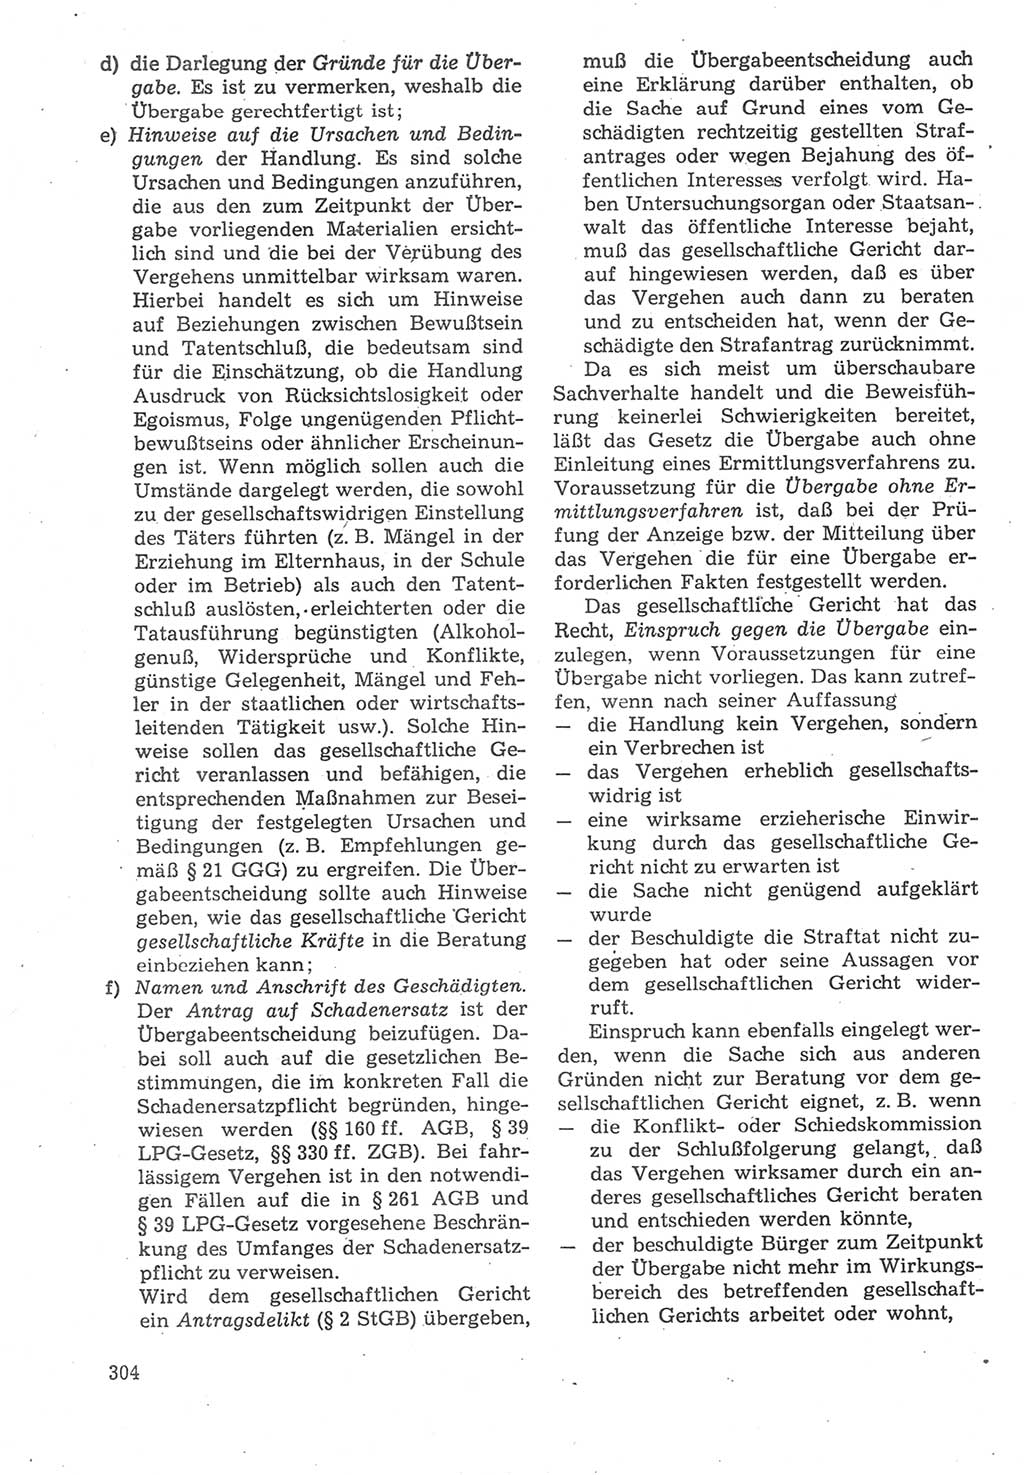 Strafverfahrensrecht [Deutsche Demokratische Republik (DDR)], Lehrbuch 1987, Seite 304 (Strafverf.-R. DDR Lb. 1987, S. 304)